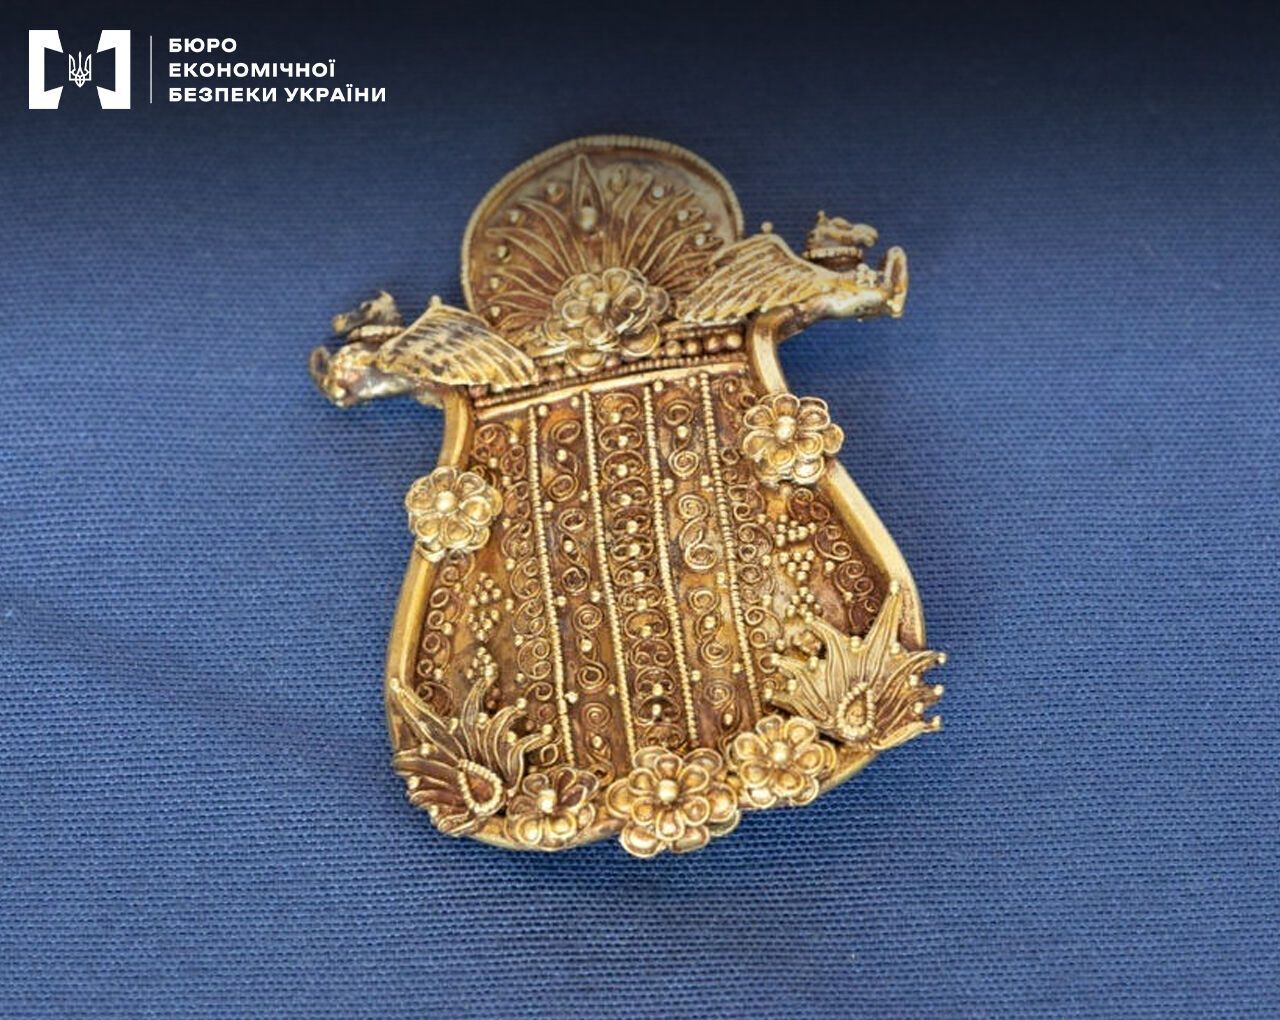 ''Scythian gold'' returned to Ukraine, more than 500 treasures: details